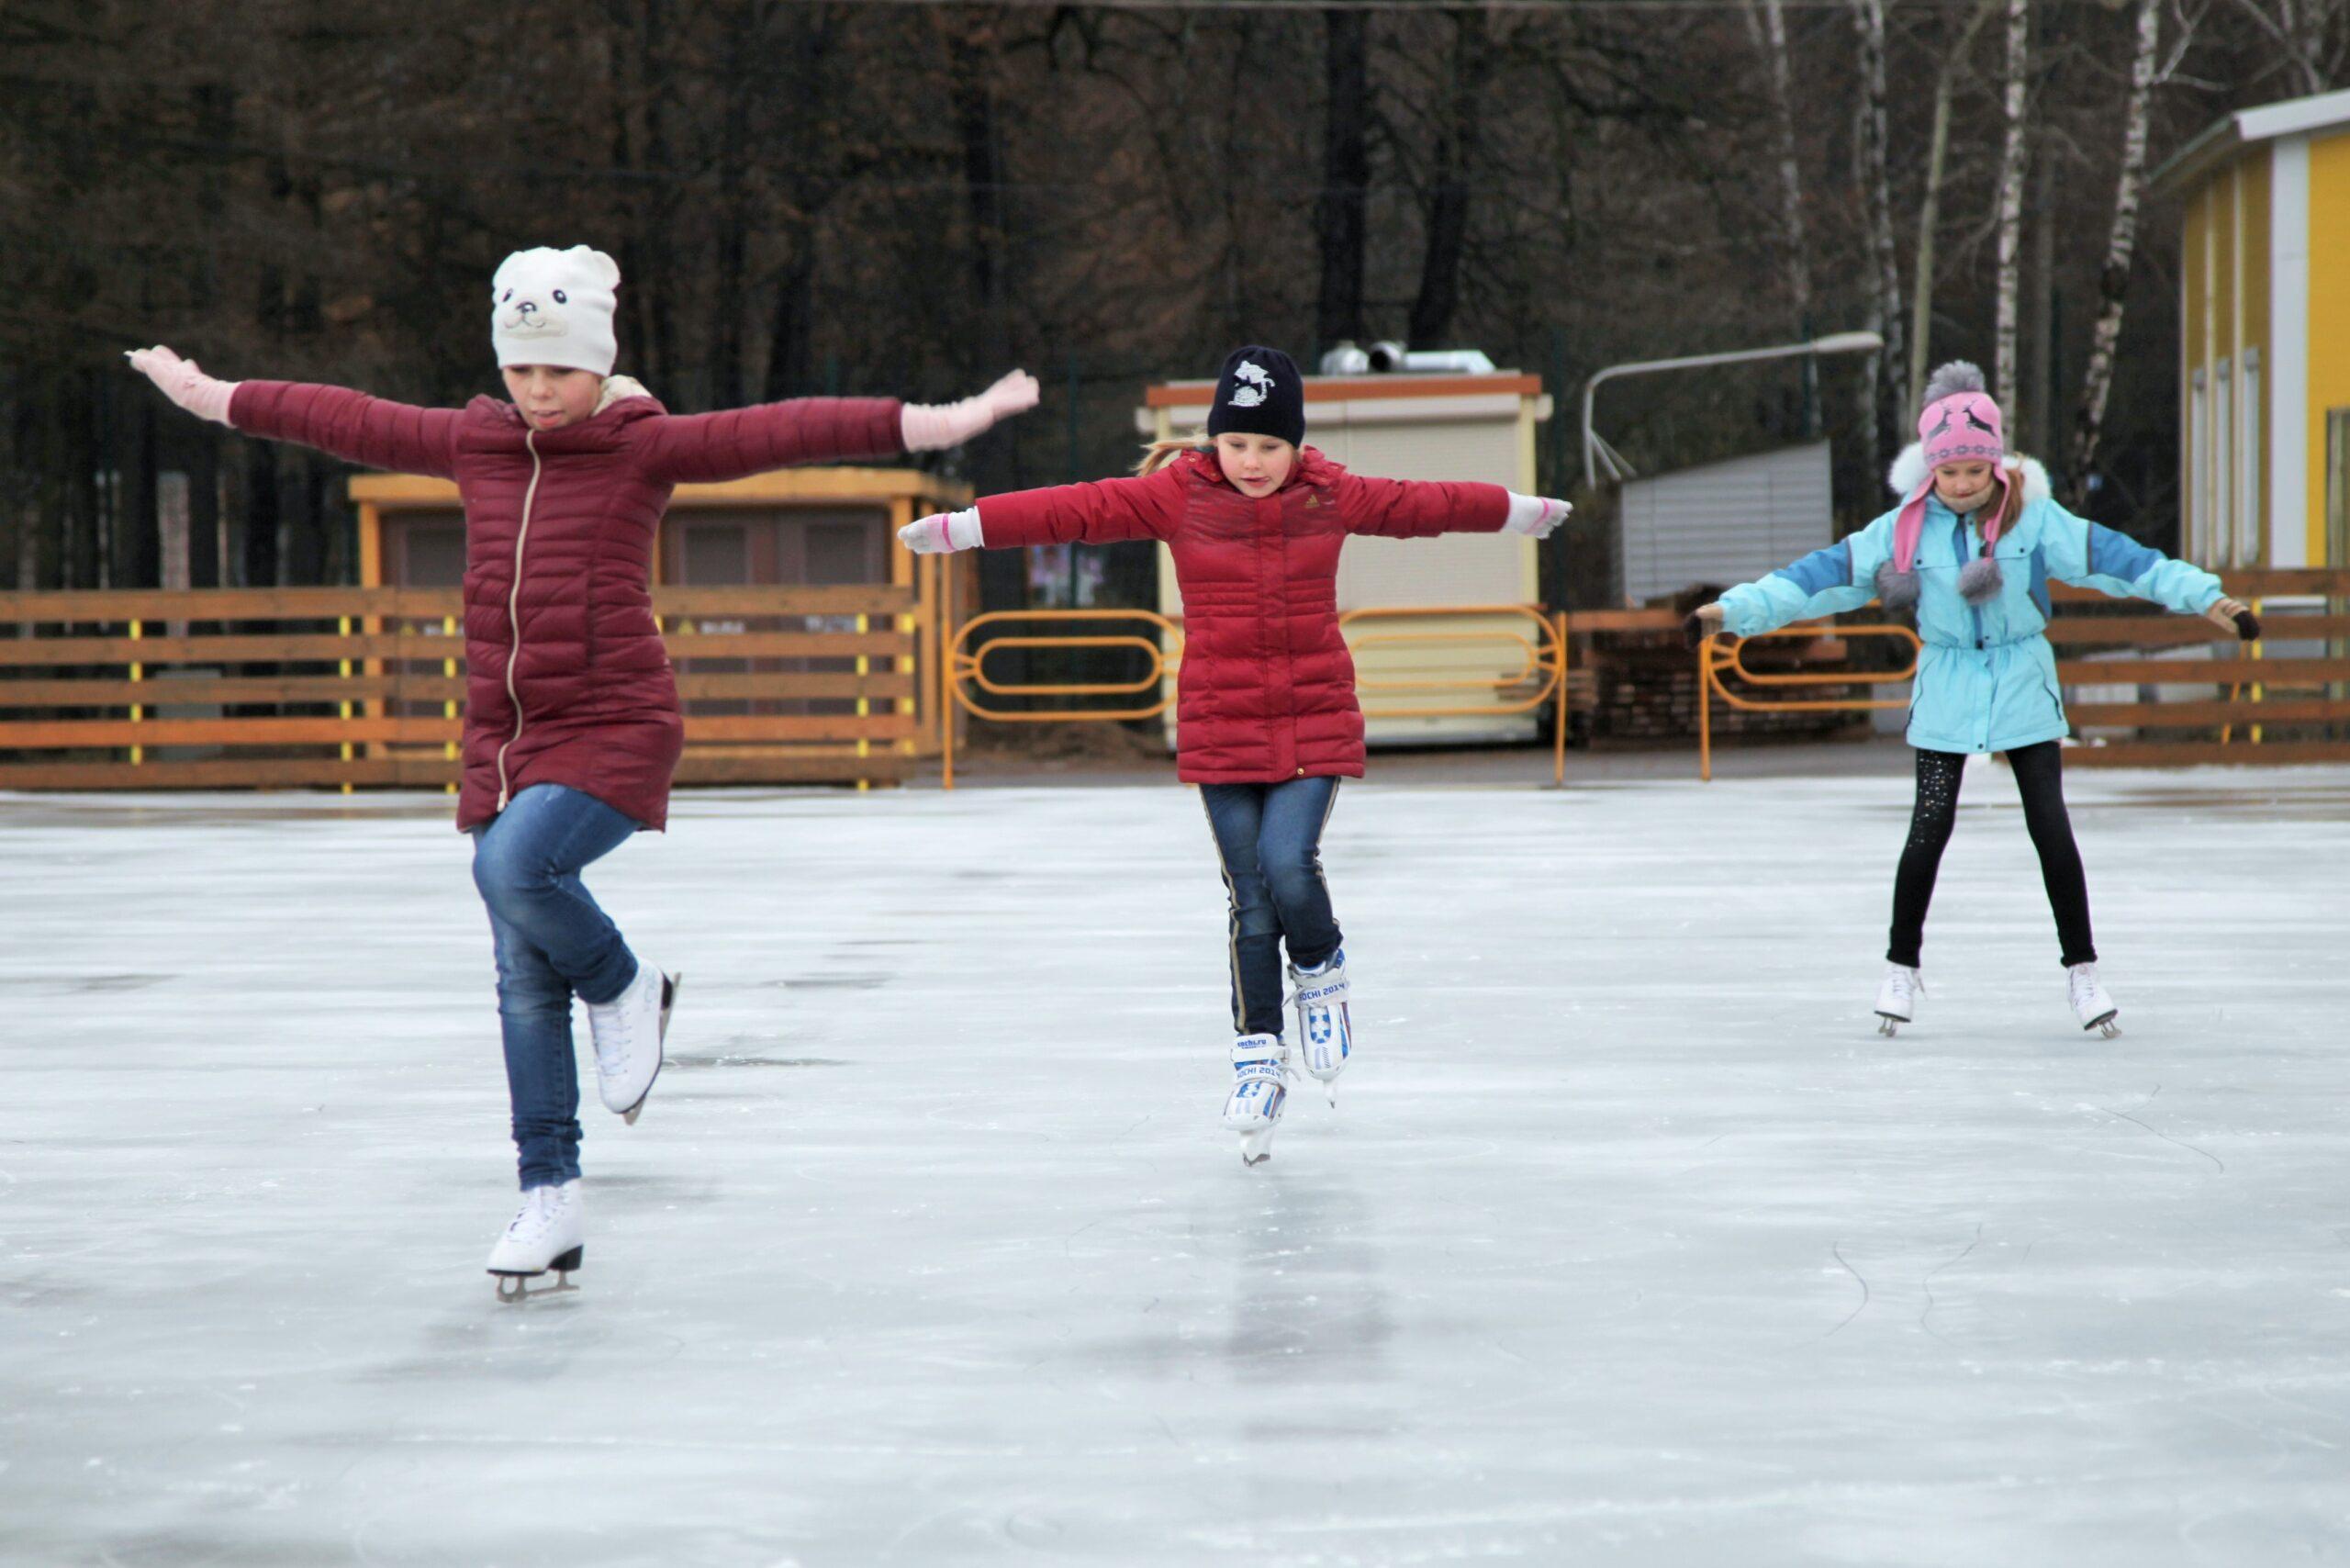 На катке было 10 человек. Катание на коньках. Дети на катке. Каток для катания на коньках. Кататься на льду.